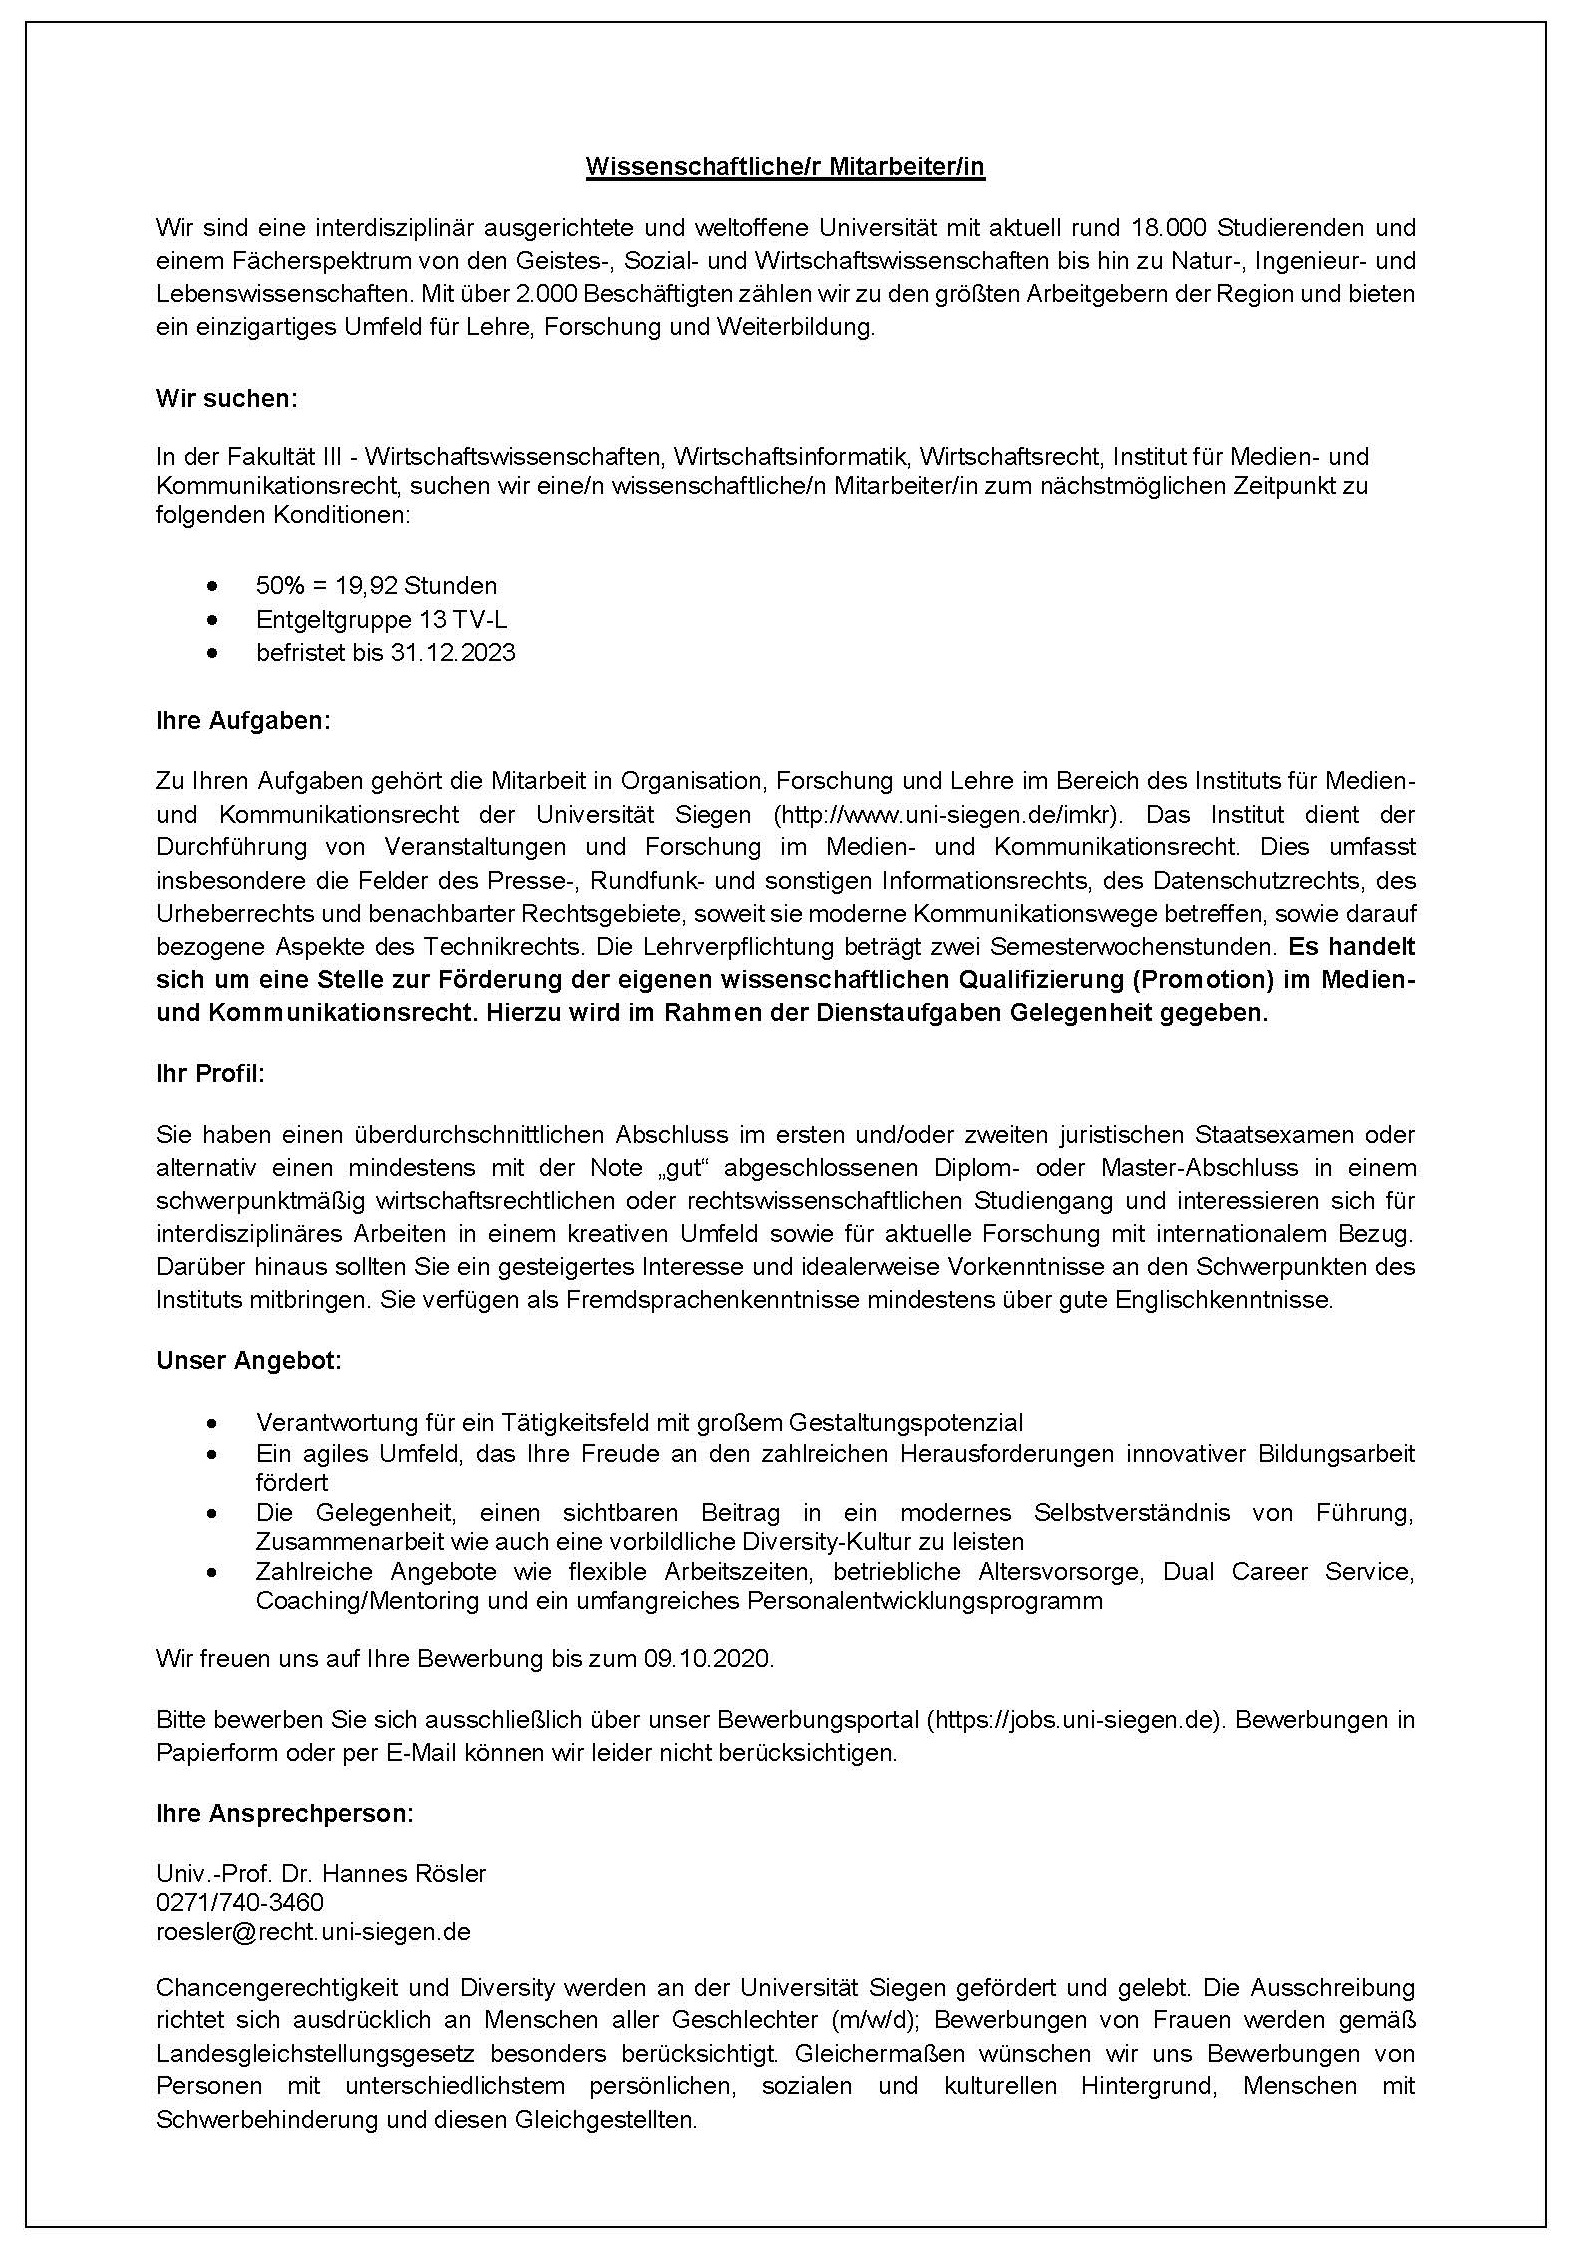 Stellenausschreibung WissMit 2020-III-IMKR-WM-120